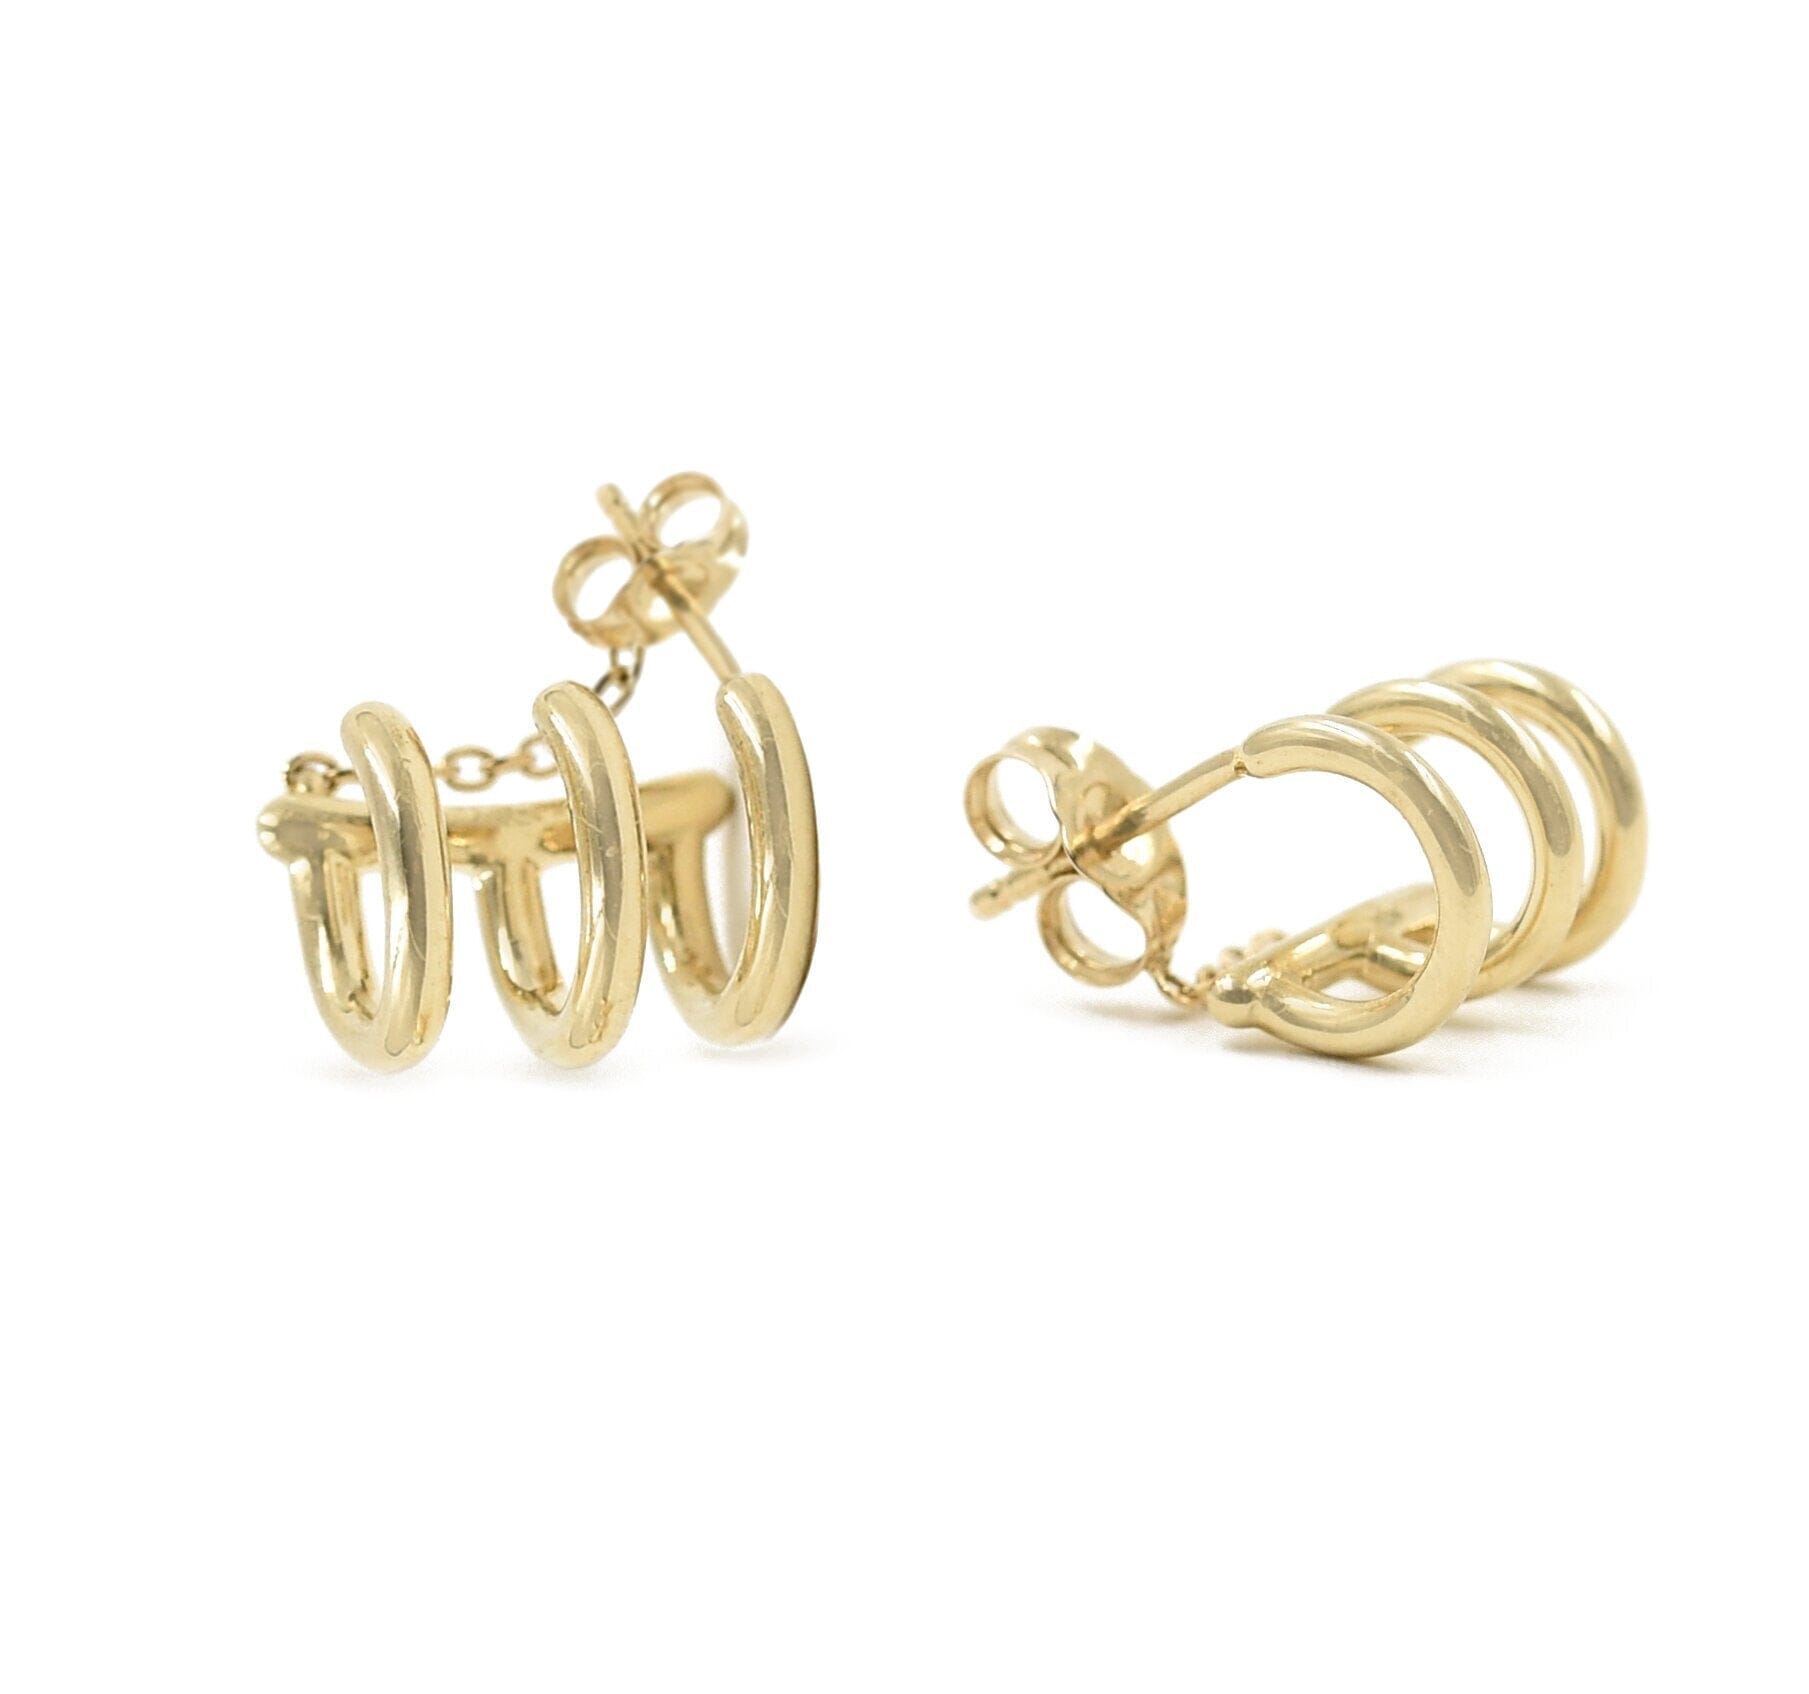 Three Hoop Earring Earrings - BONDEYE JEWELRY ®